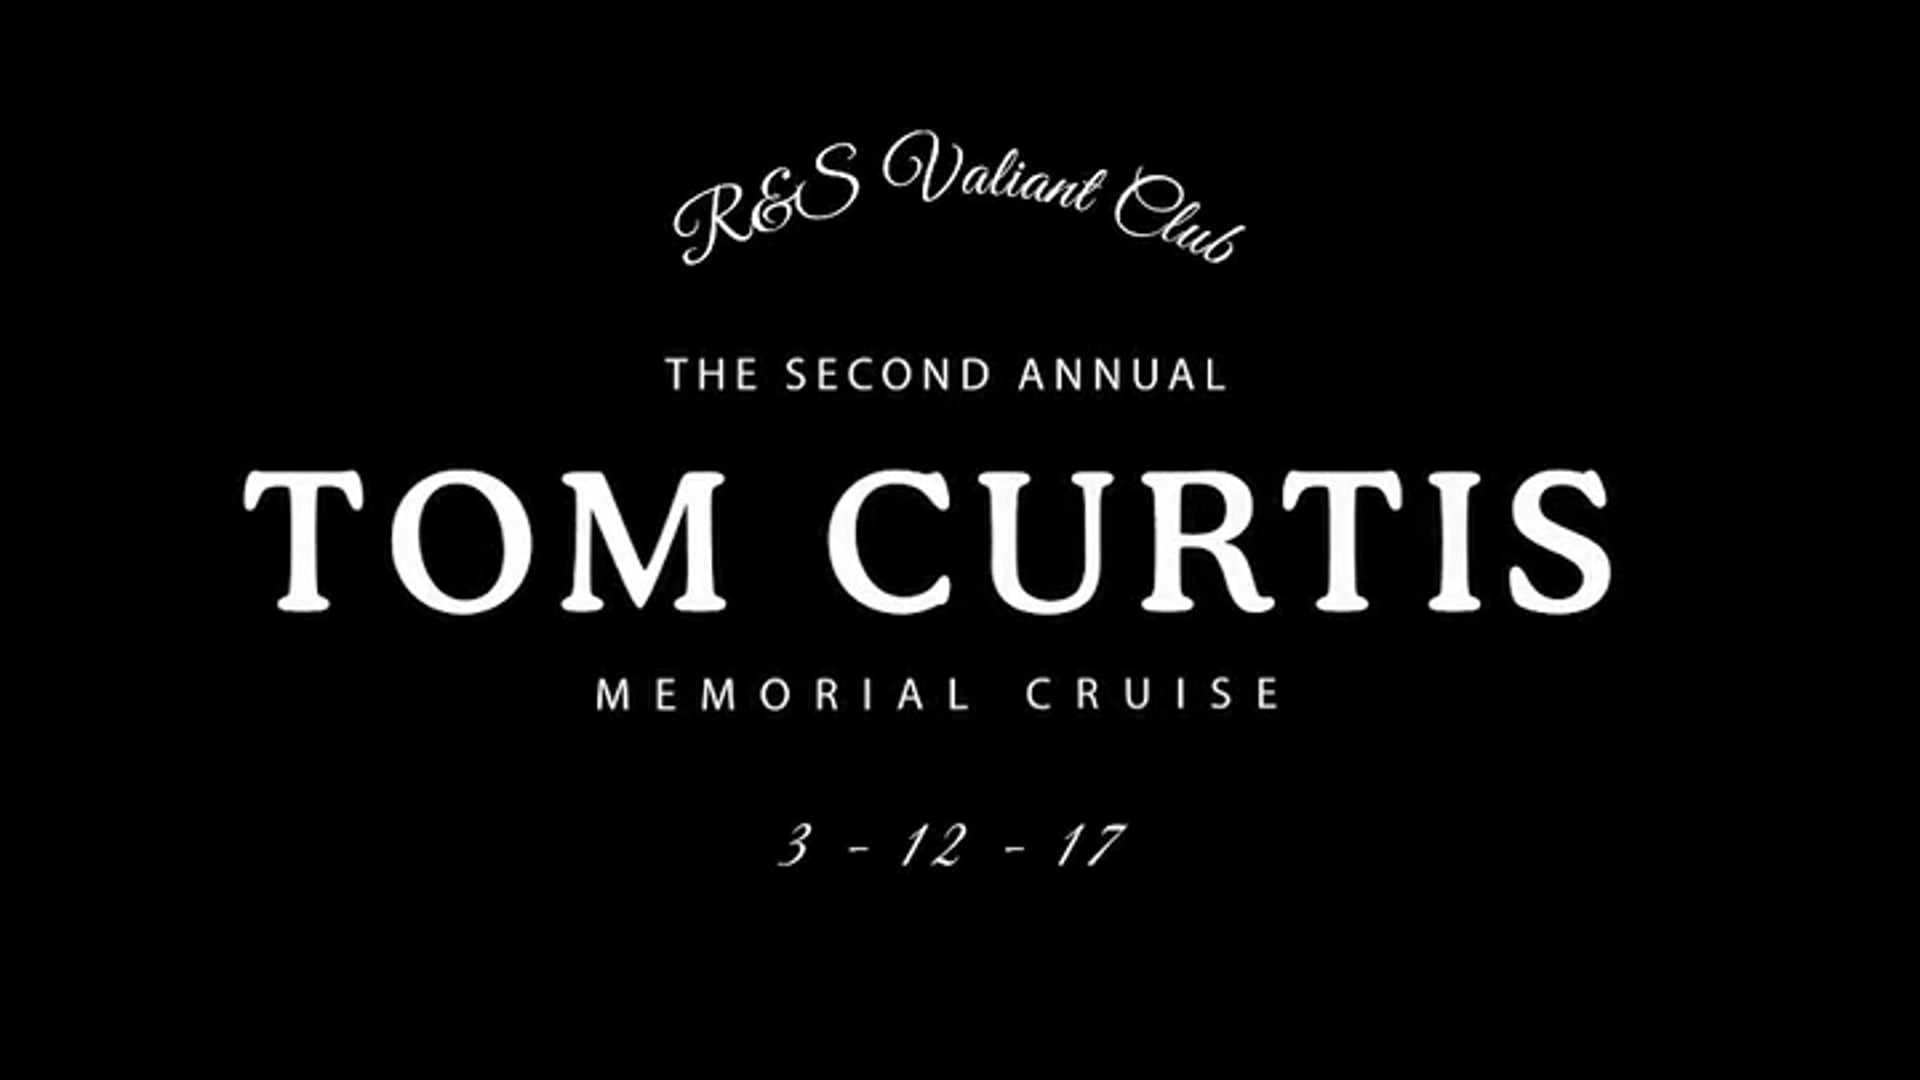 Tom Curtis Memorial Cruise - Dec 2017